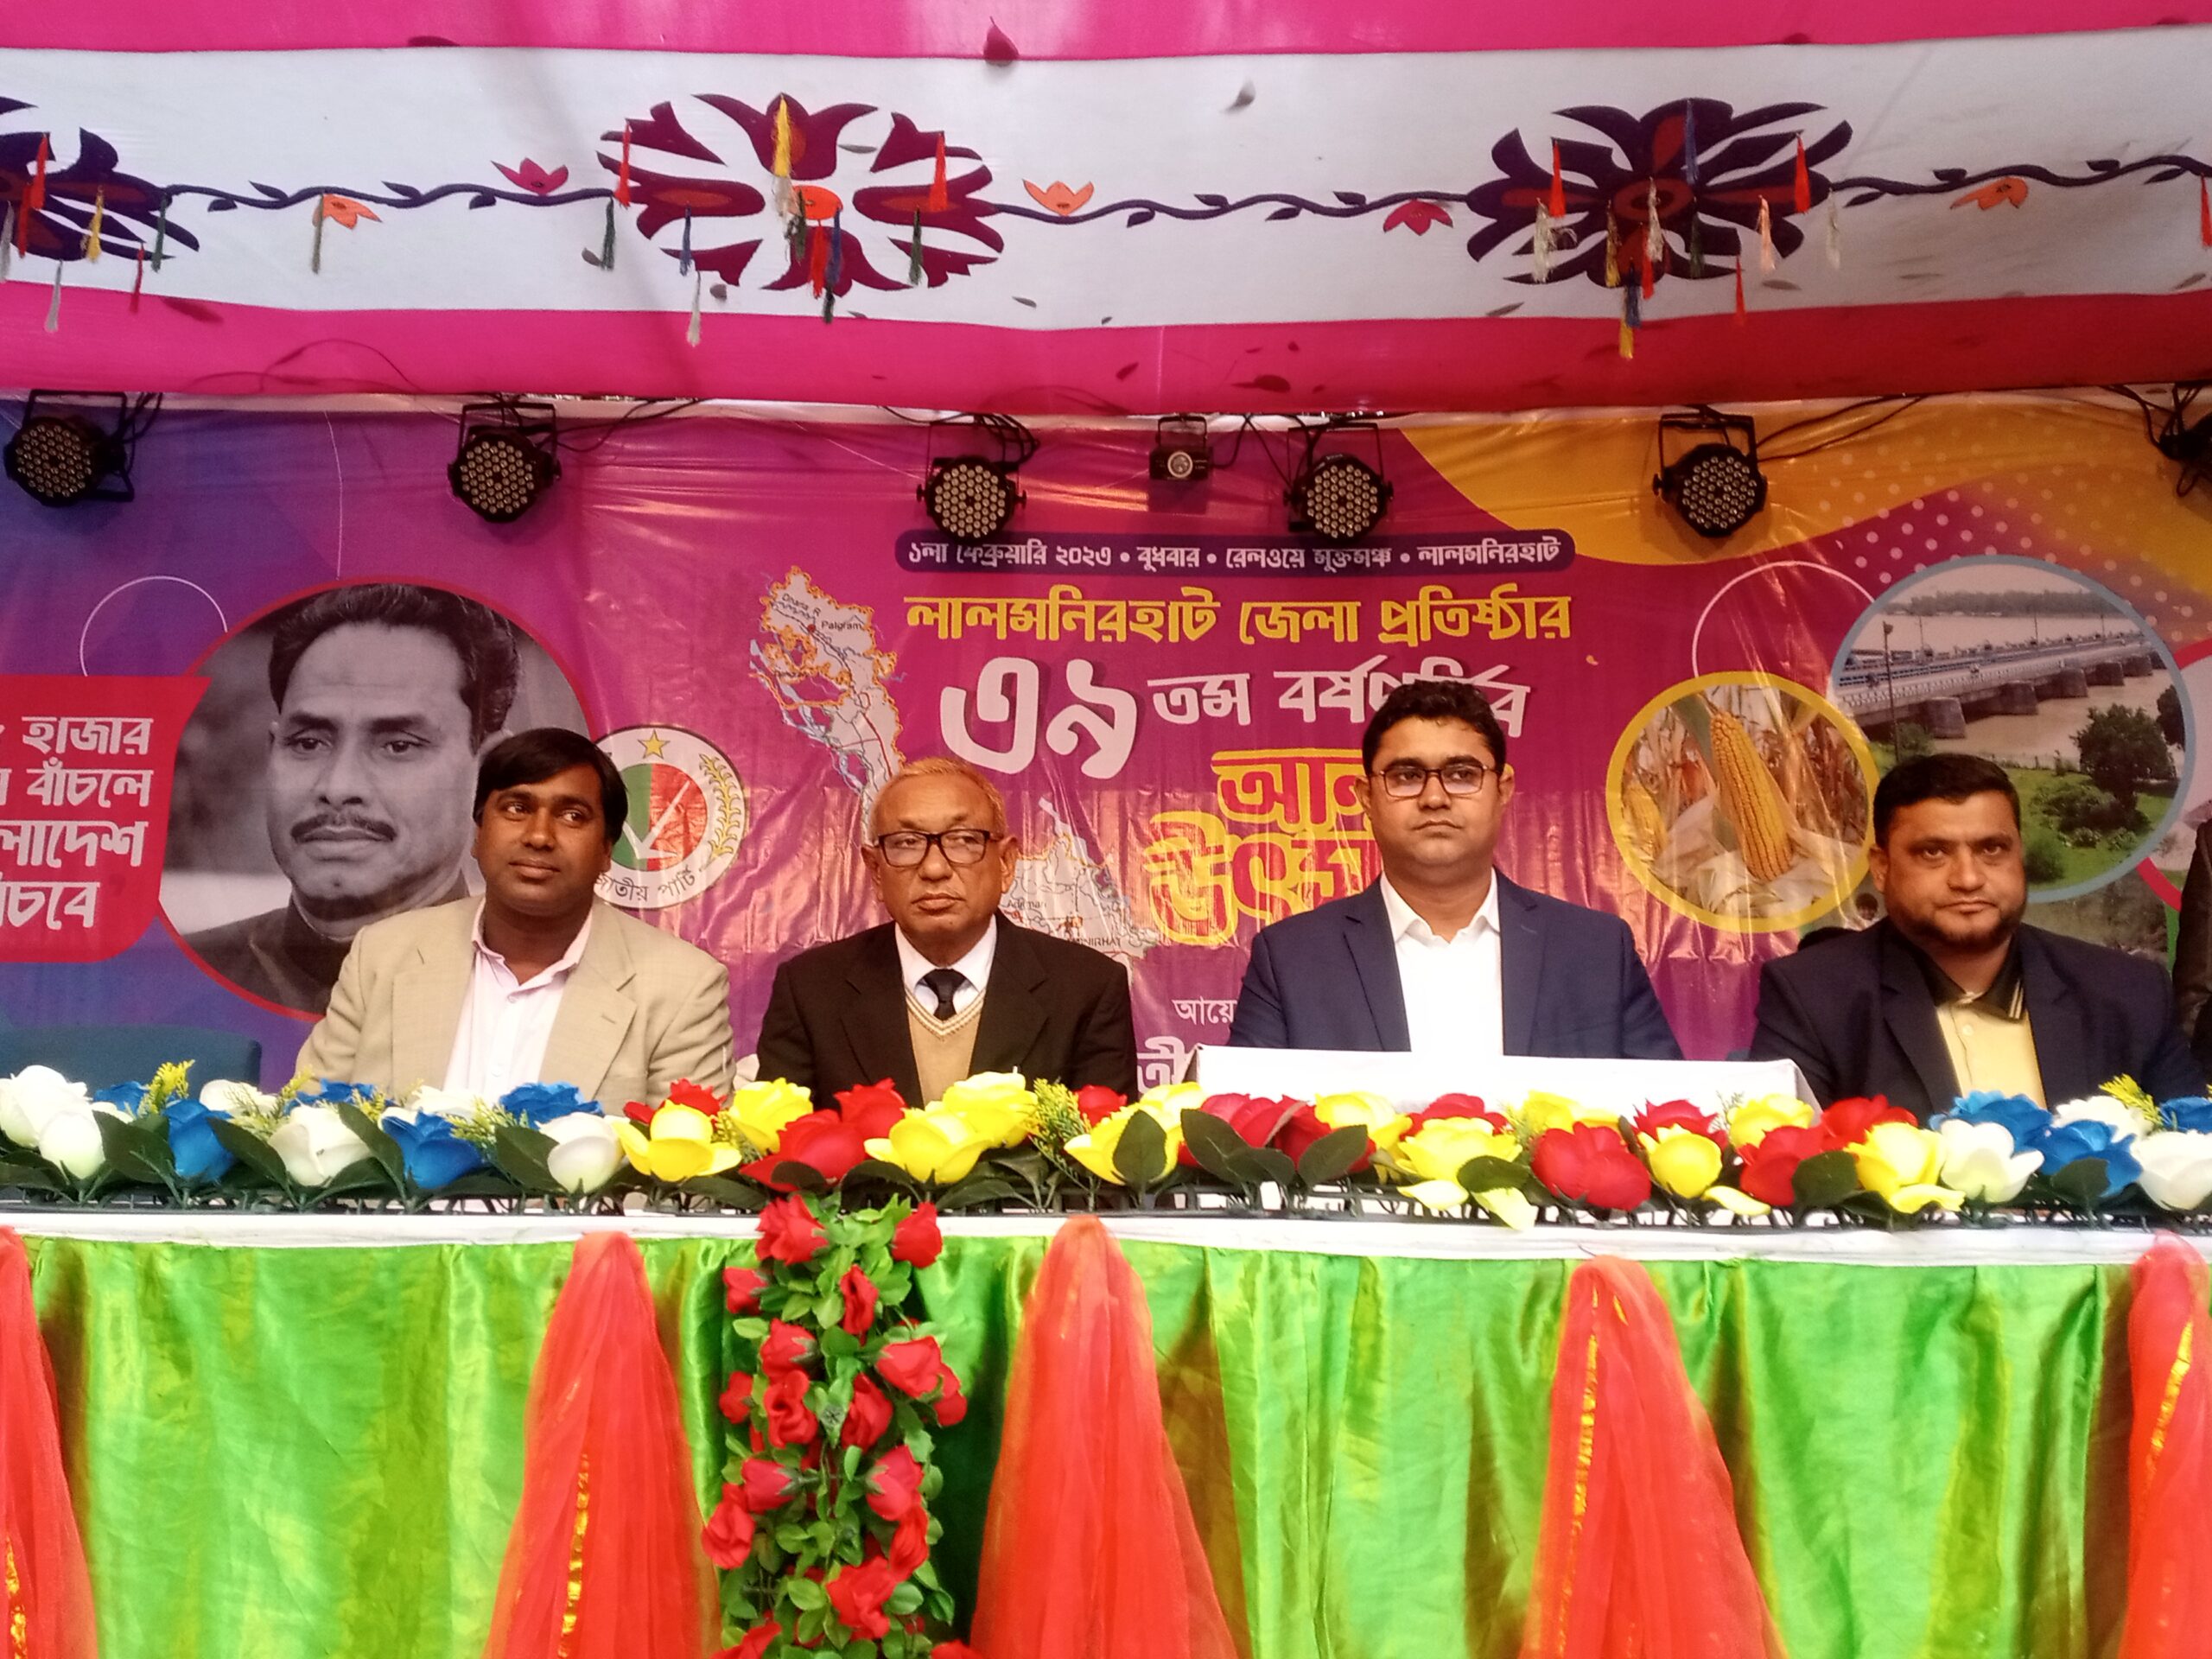 লালমনিরহাট জেলা প্রতিষ্ঠার ৩৯ তম বর্ষপূর্তির আনন্দ উৎসব অনুষ্ঠিত